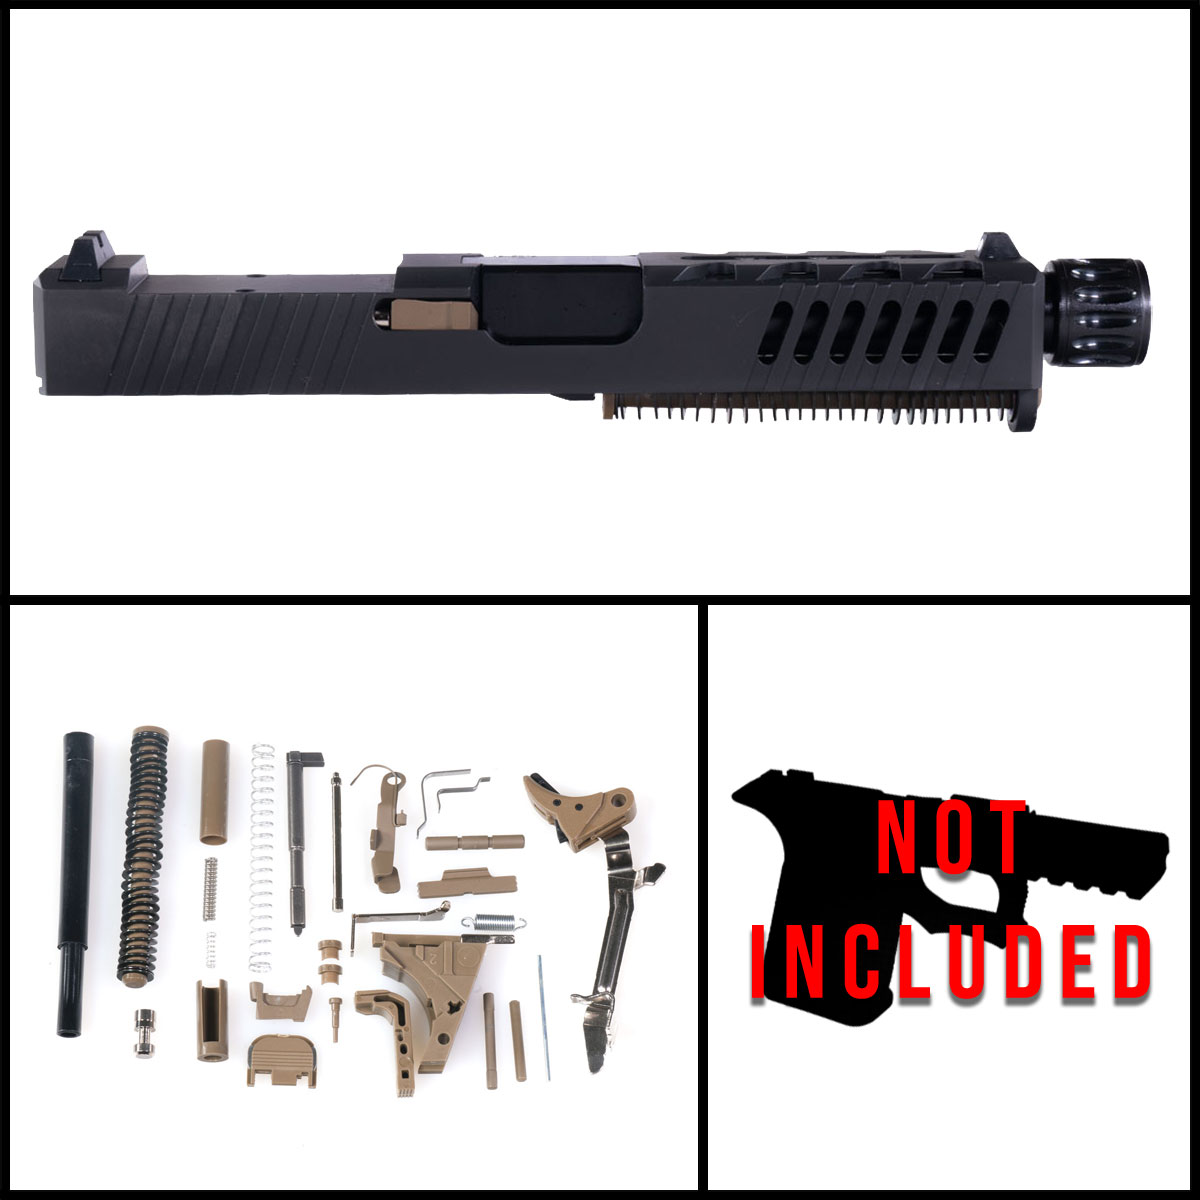 DTT 'Sand Storm' 9mm Full Pistol Build Kit (Everything Minus Frame) - Glock 19 Gen 1-3 Compatible